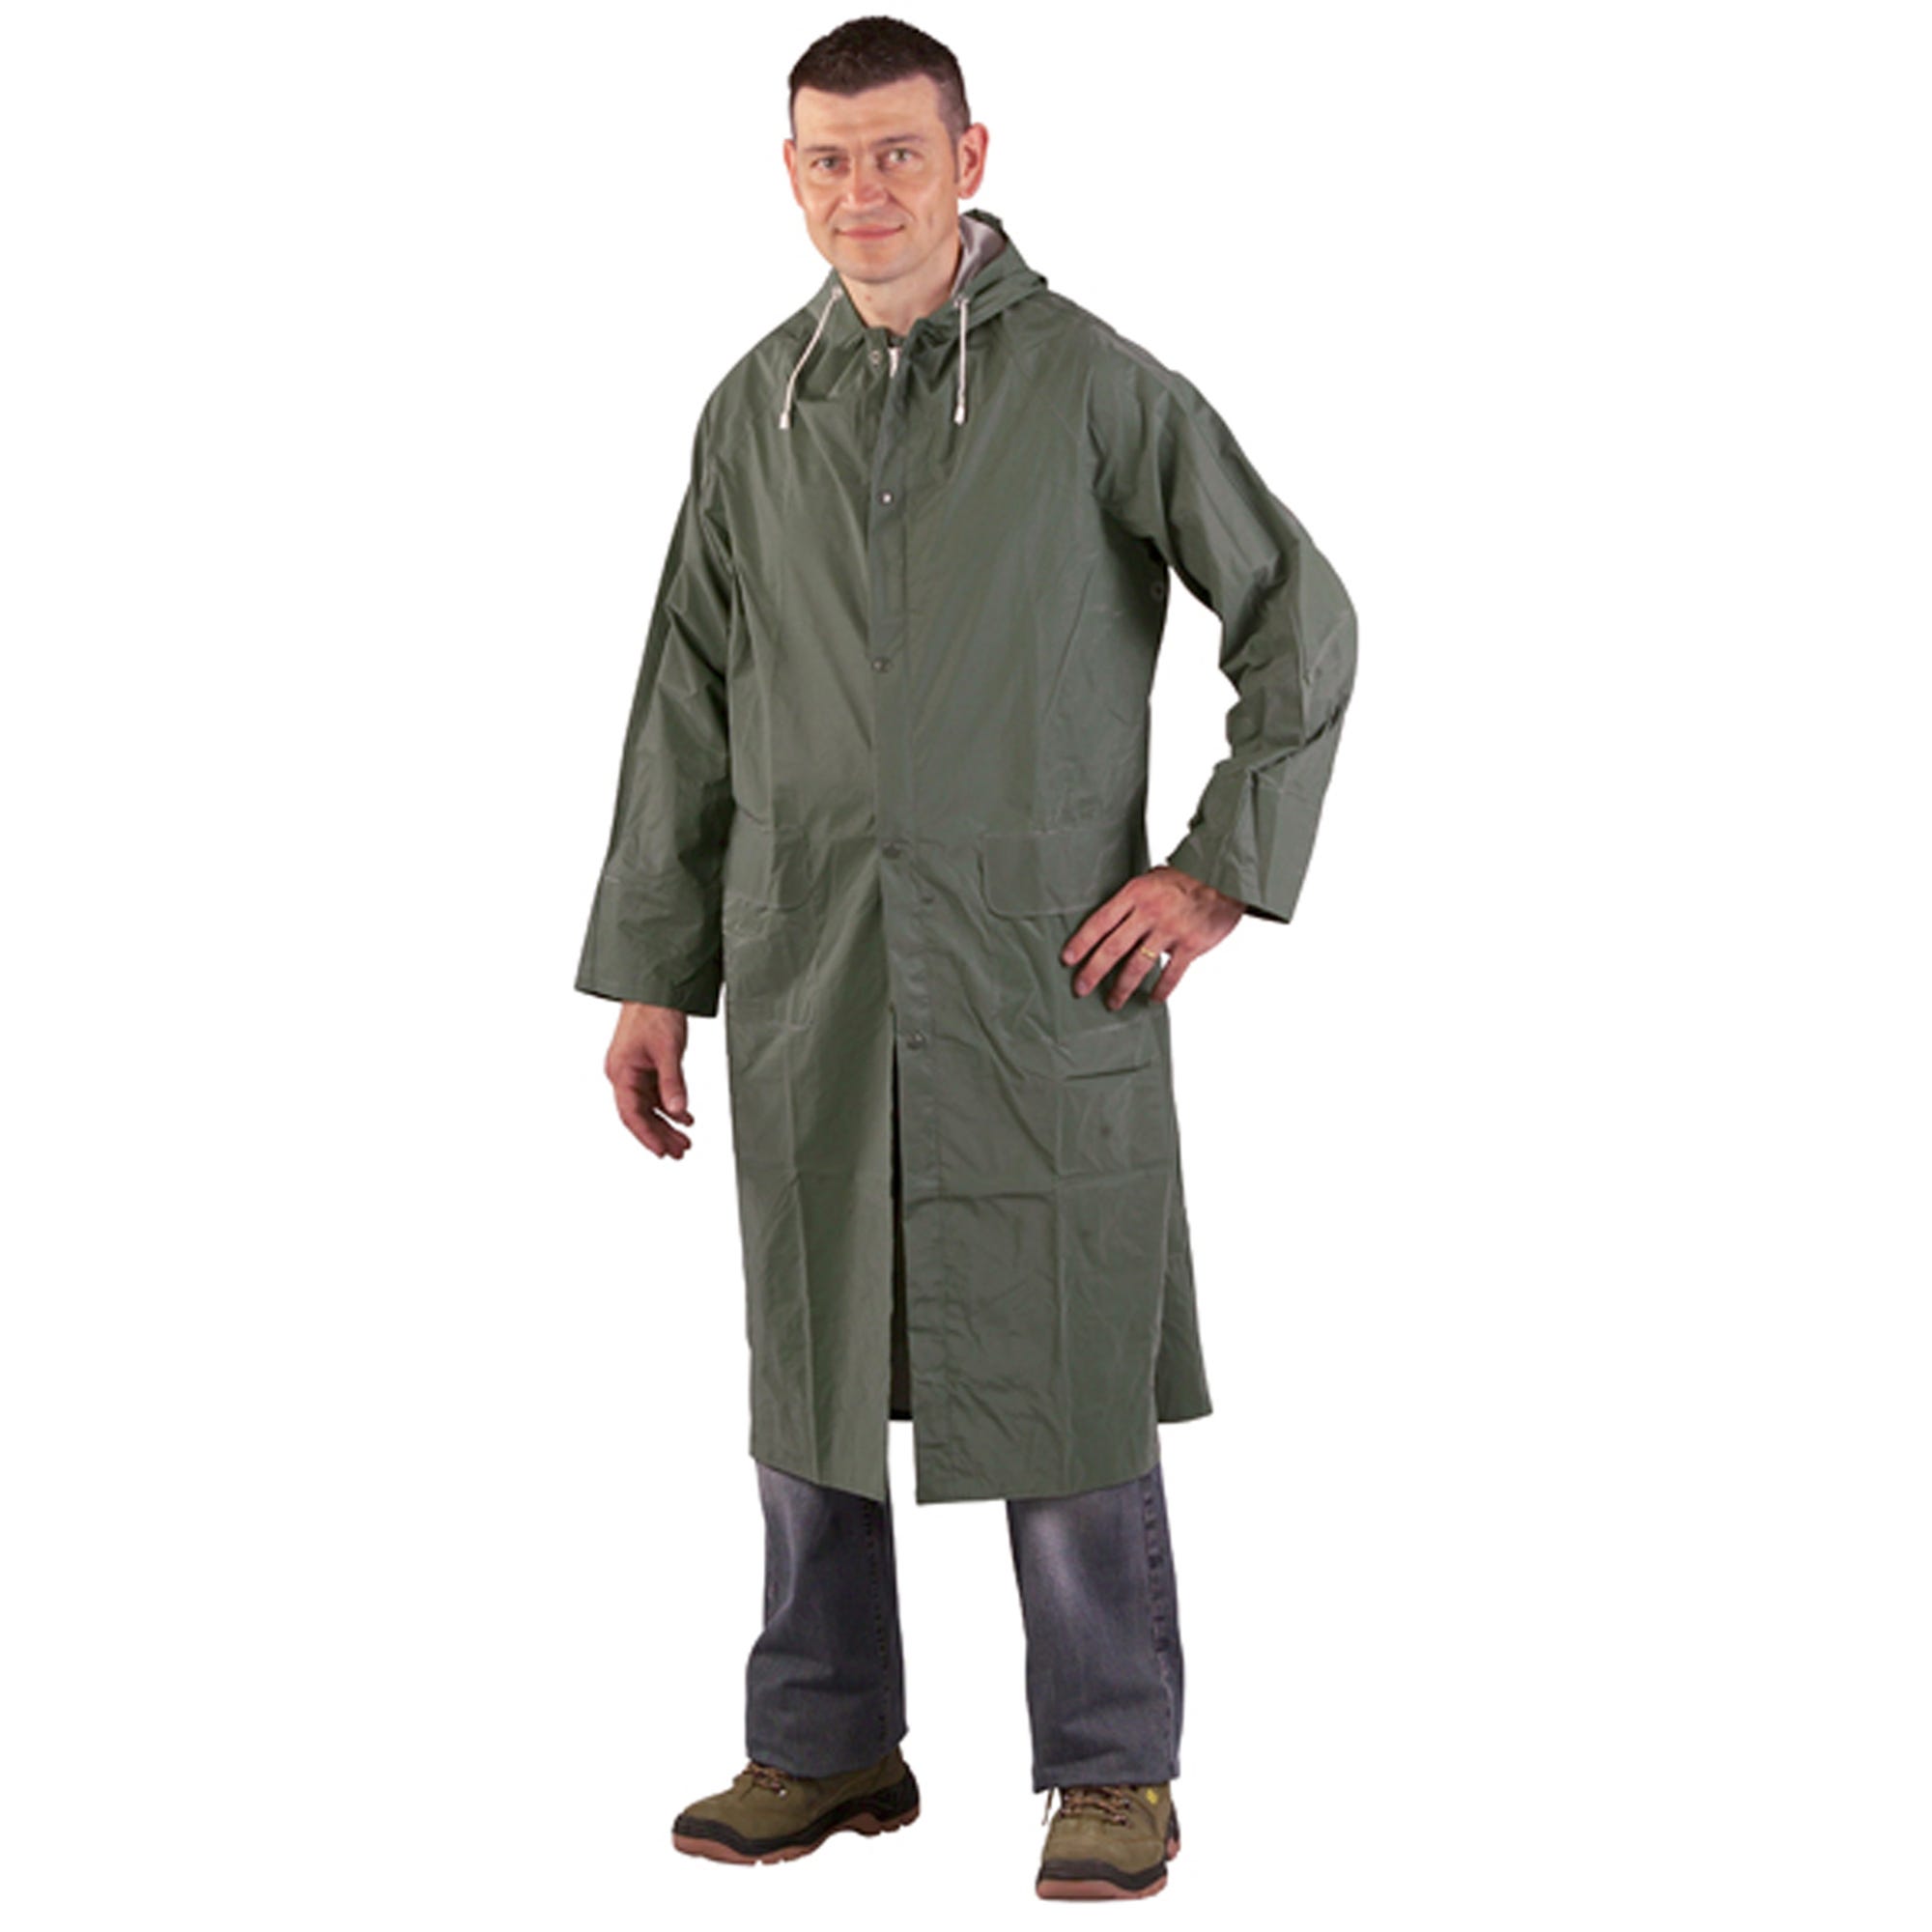 Manteau de pluie CO/PES, vert, 415g/m² - COVERGUARD - Taille 3XL 1